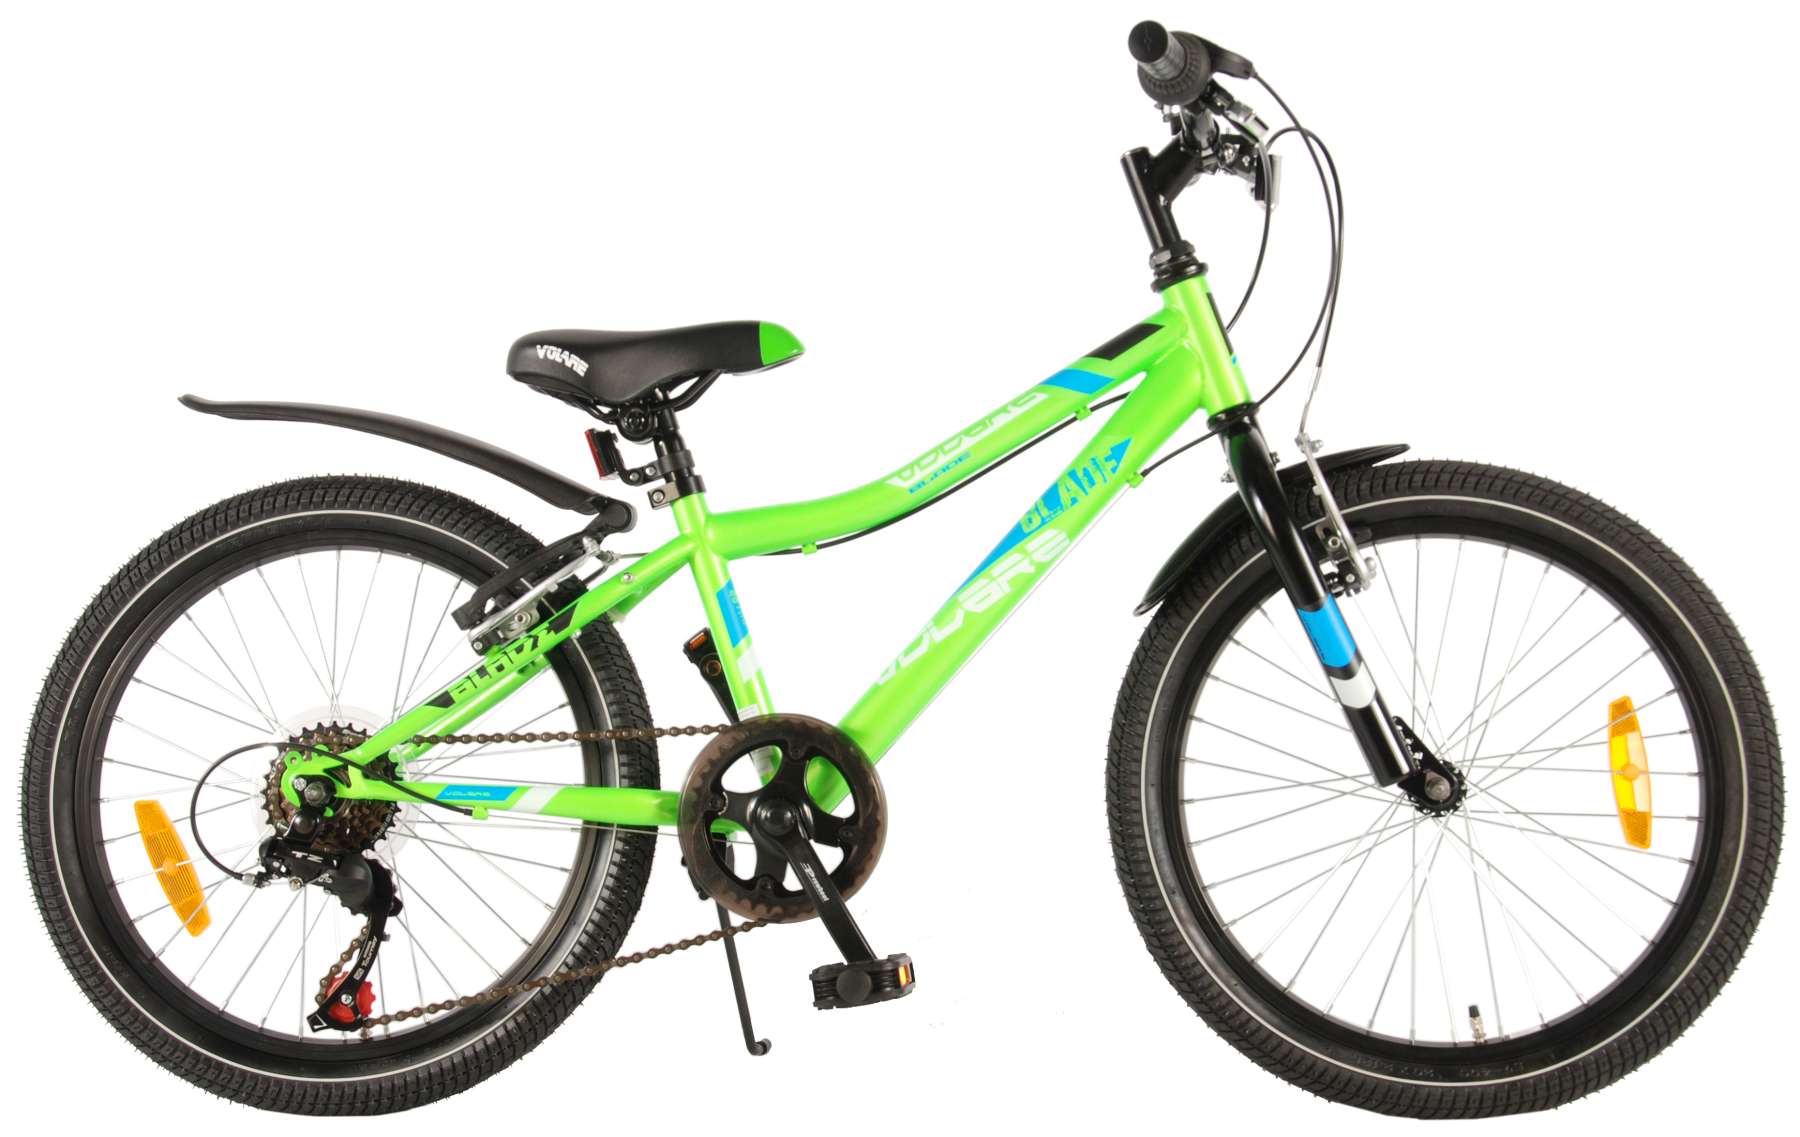 green boys bike